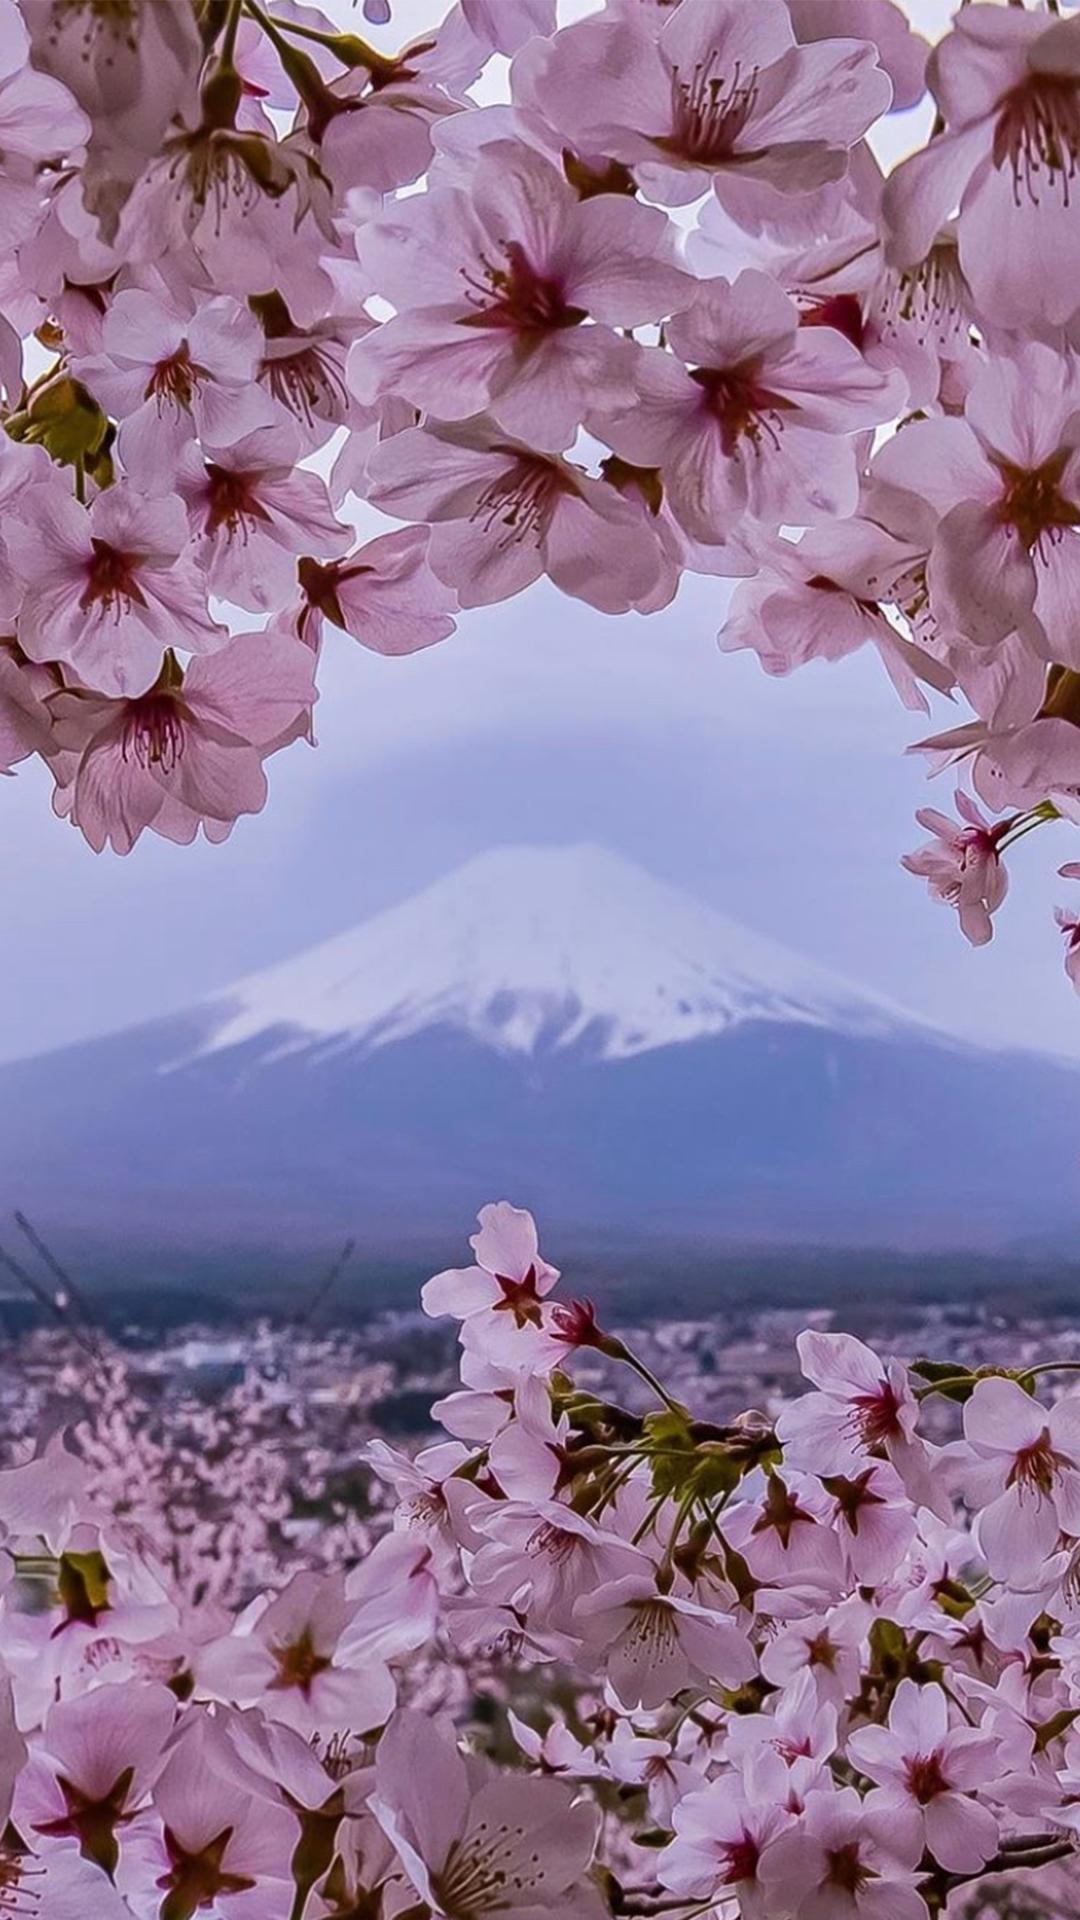 富士山樱花唯美浪漫风景图片壁纸插图